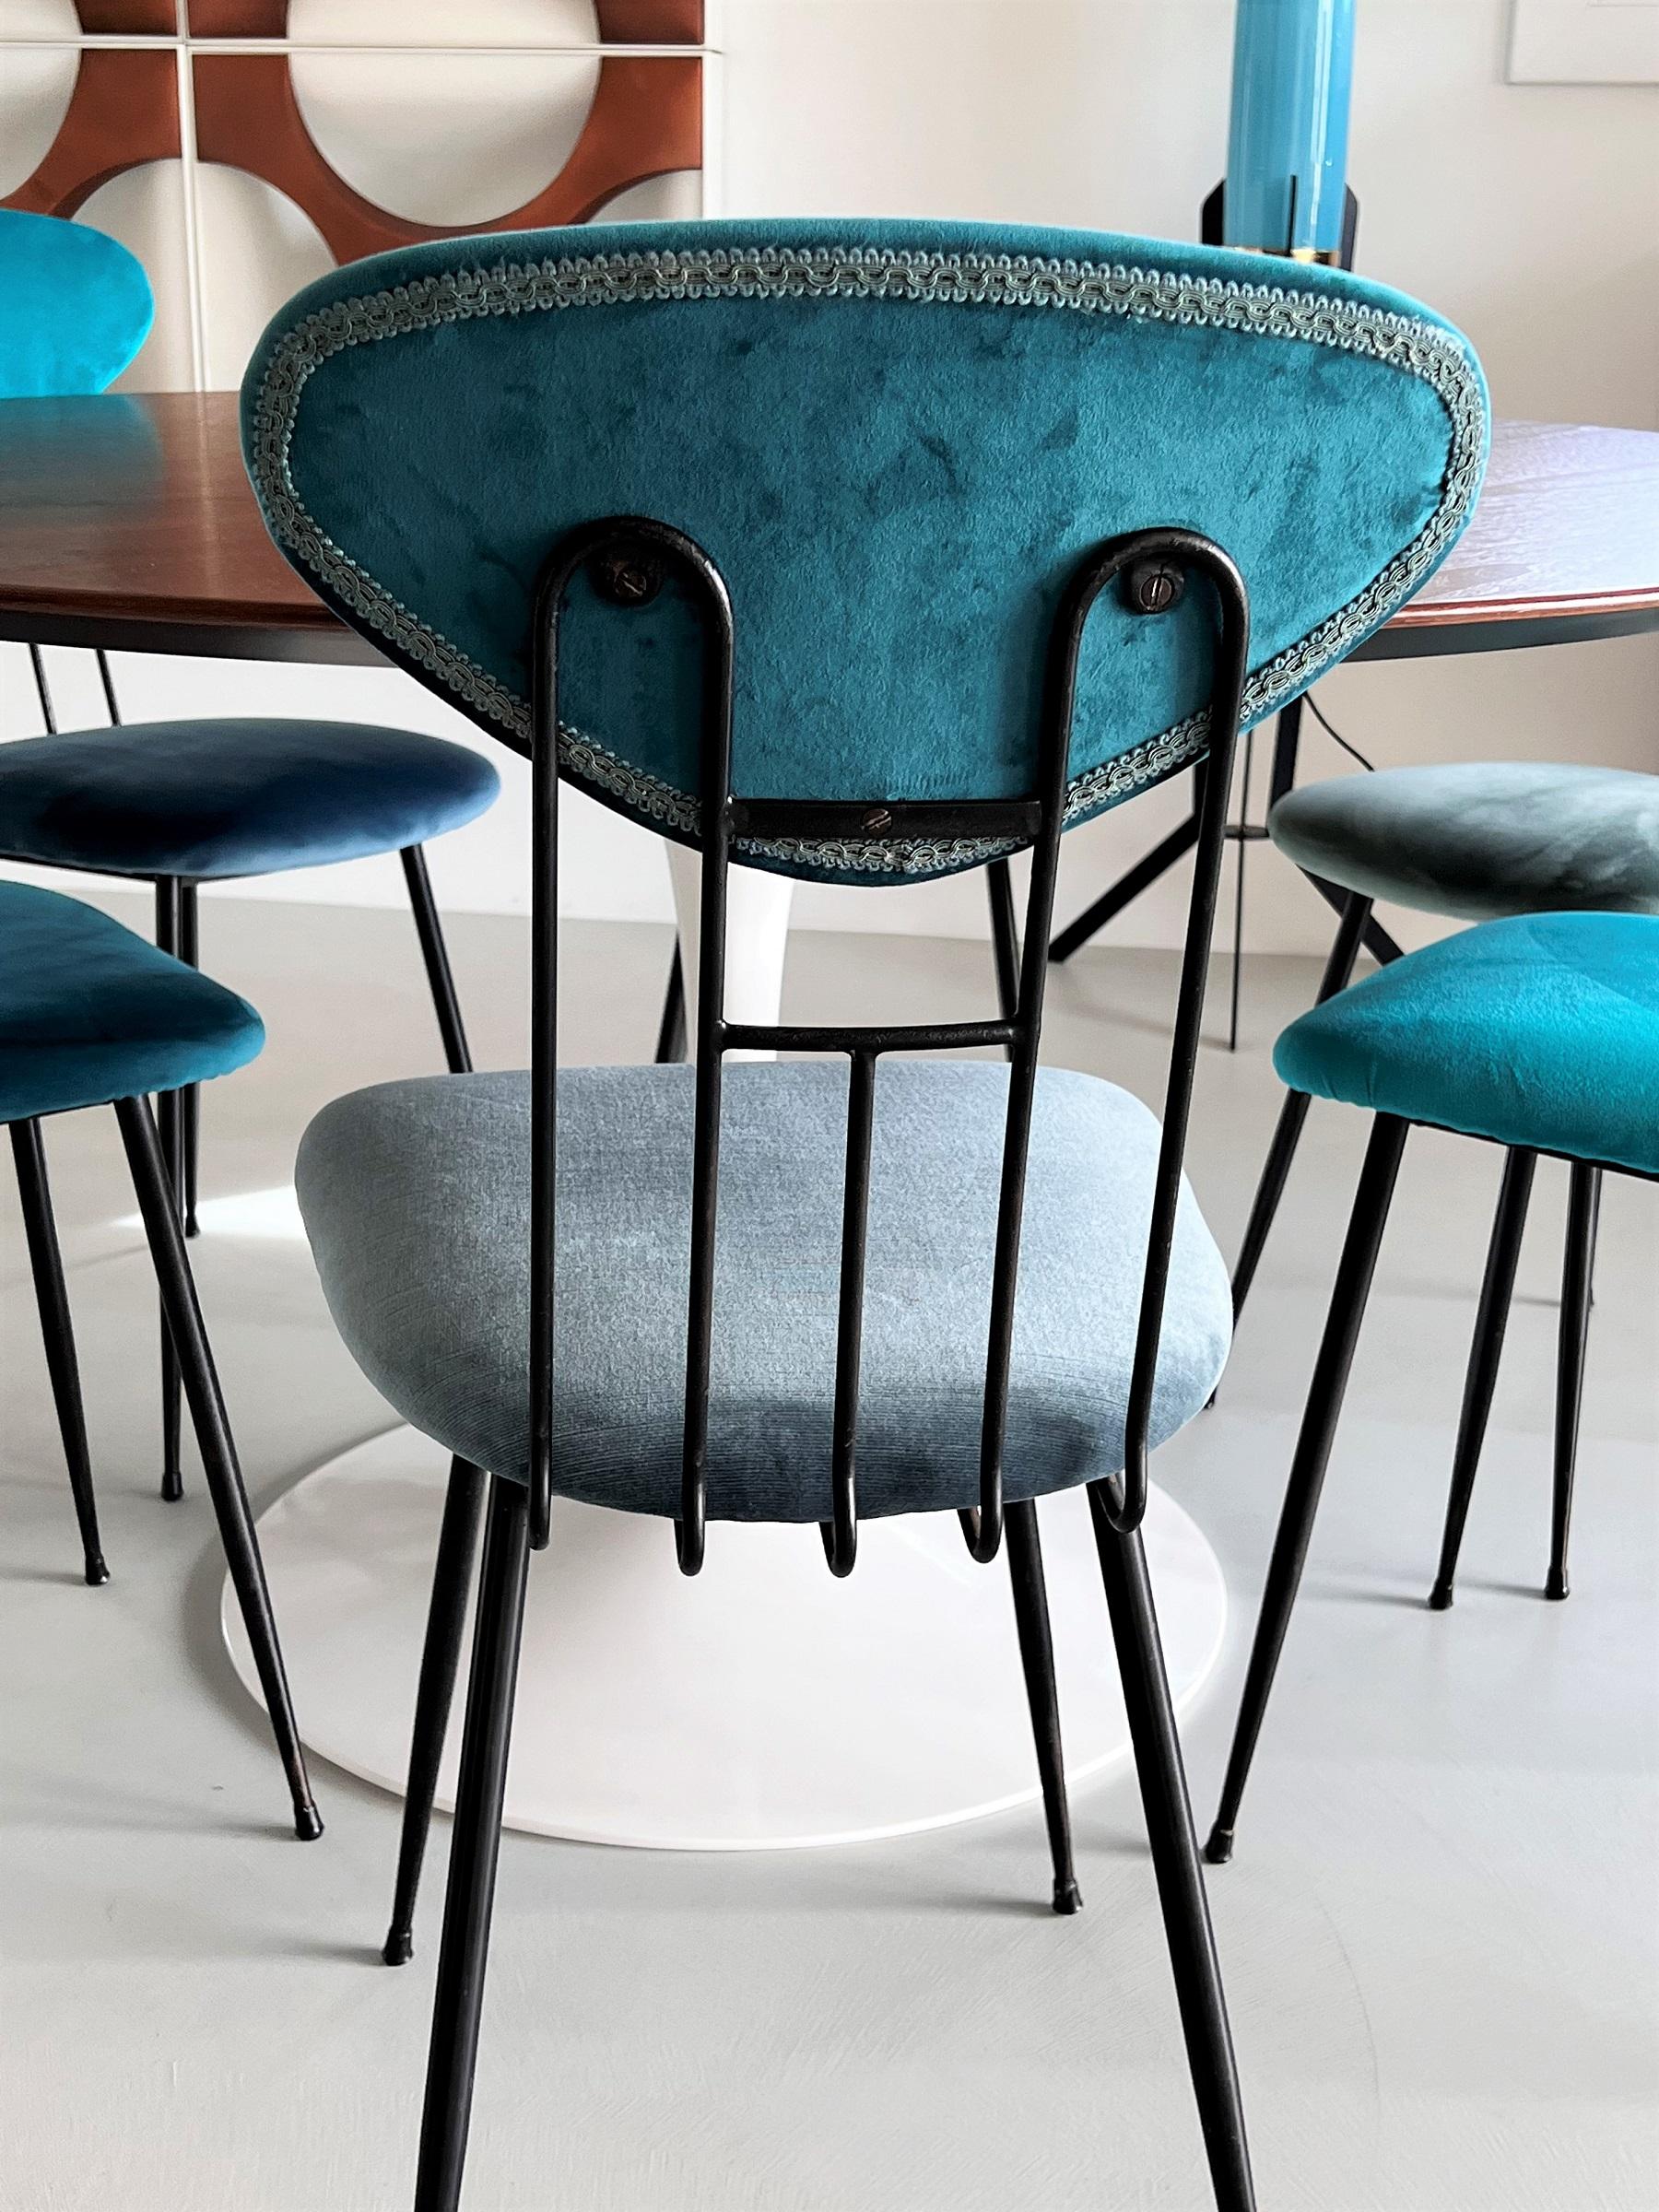 Italian Midcentury Dining Room Chairs Re-Upholstered in Velvet, 1960s For Sale 4